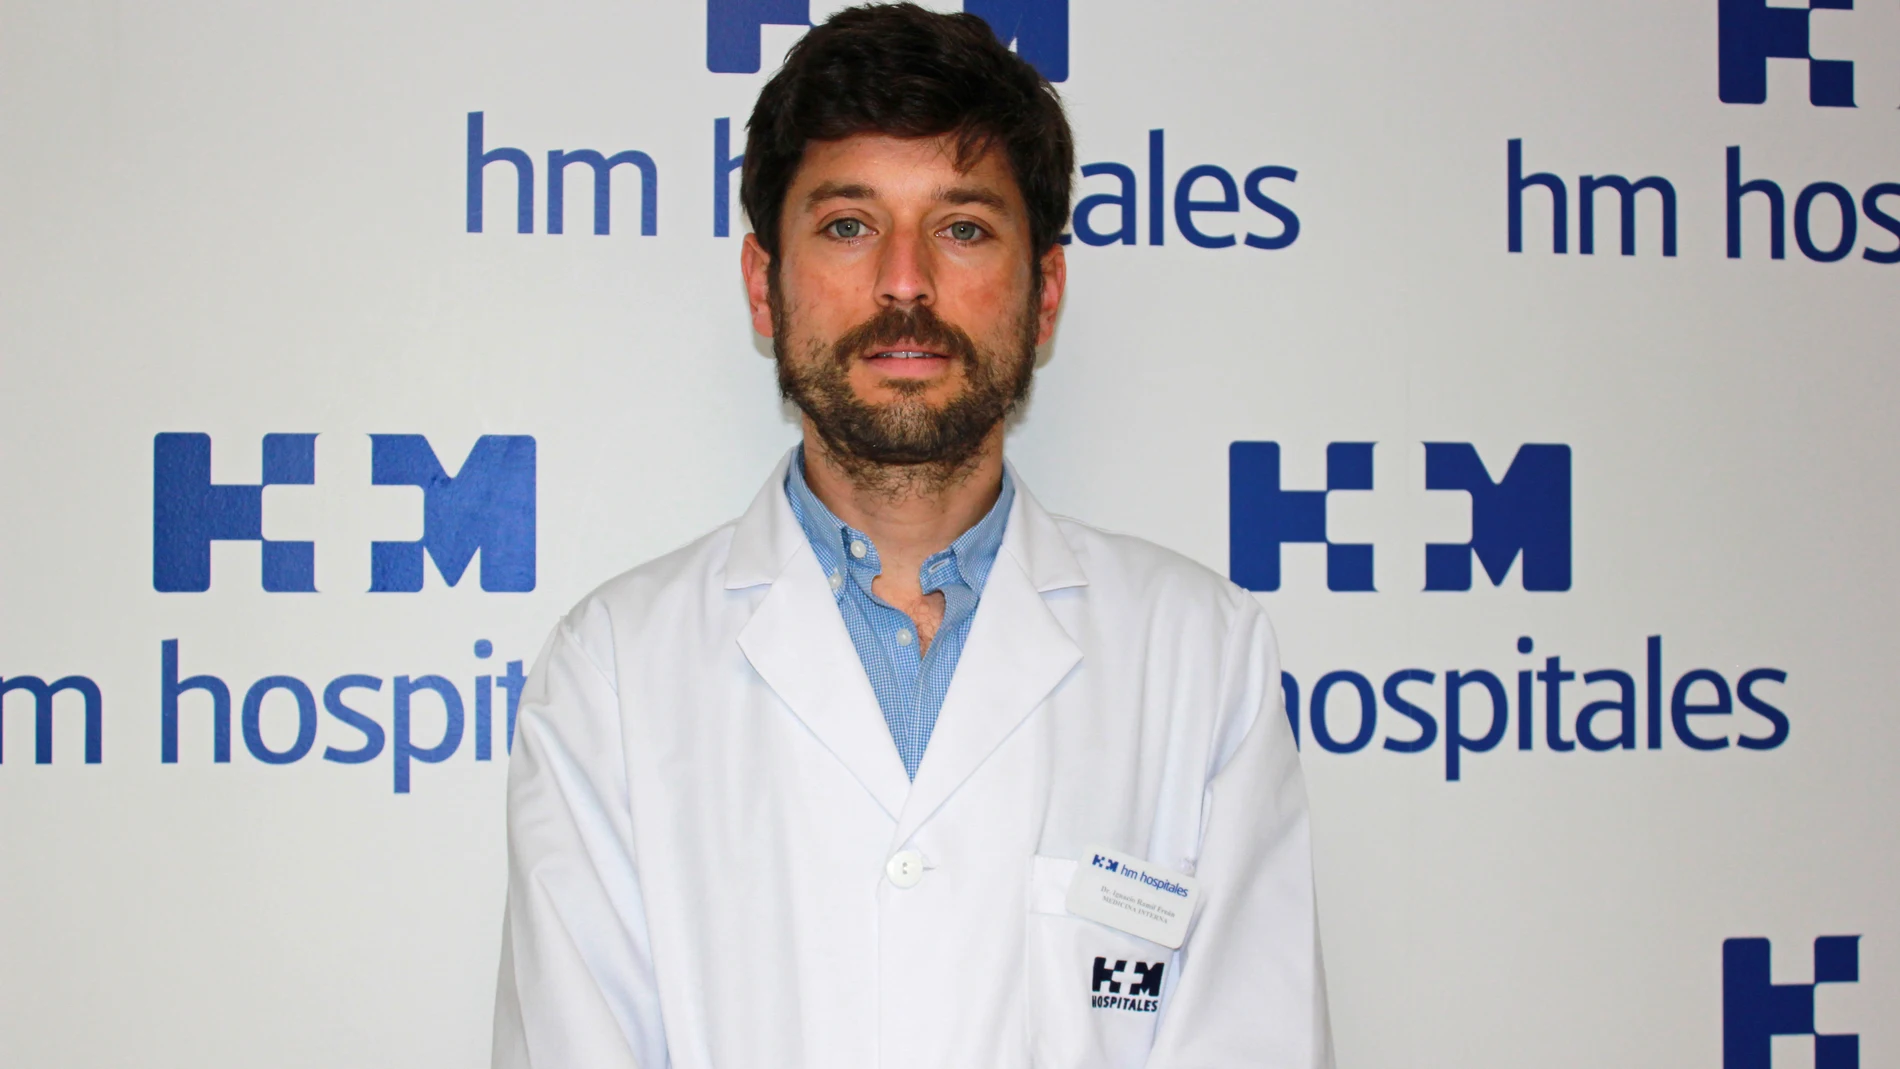 Ignacio Ramil, jefe del Servicio de Medicina Interna del Hospital HM Modelo